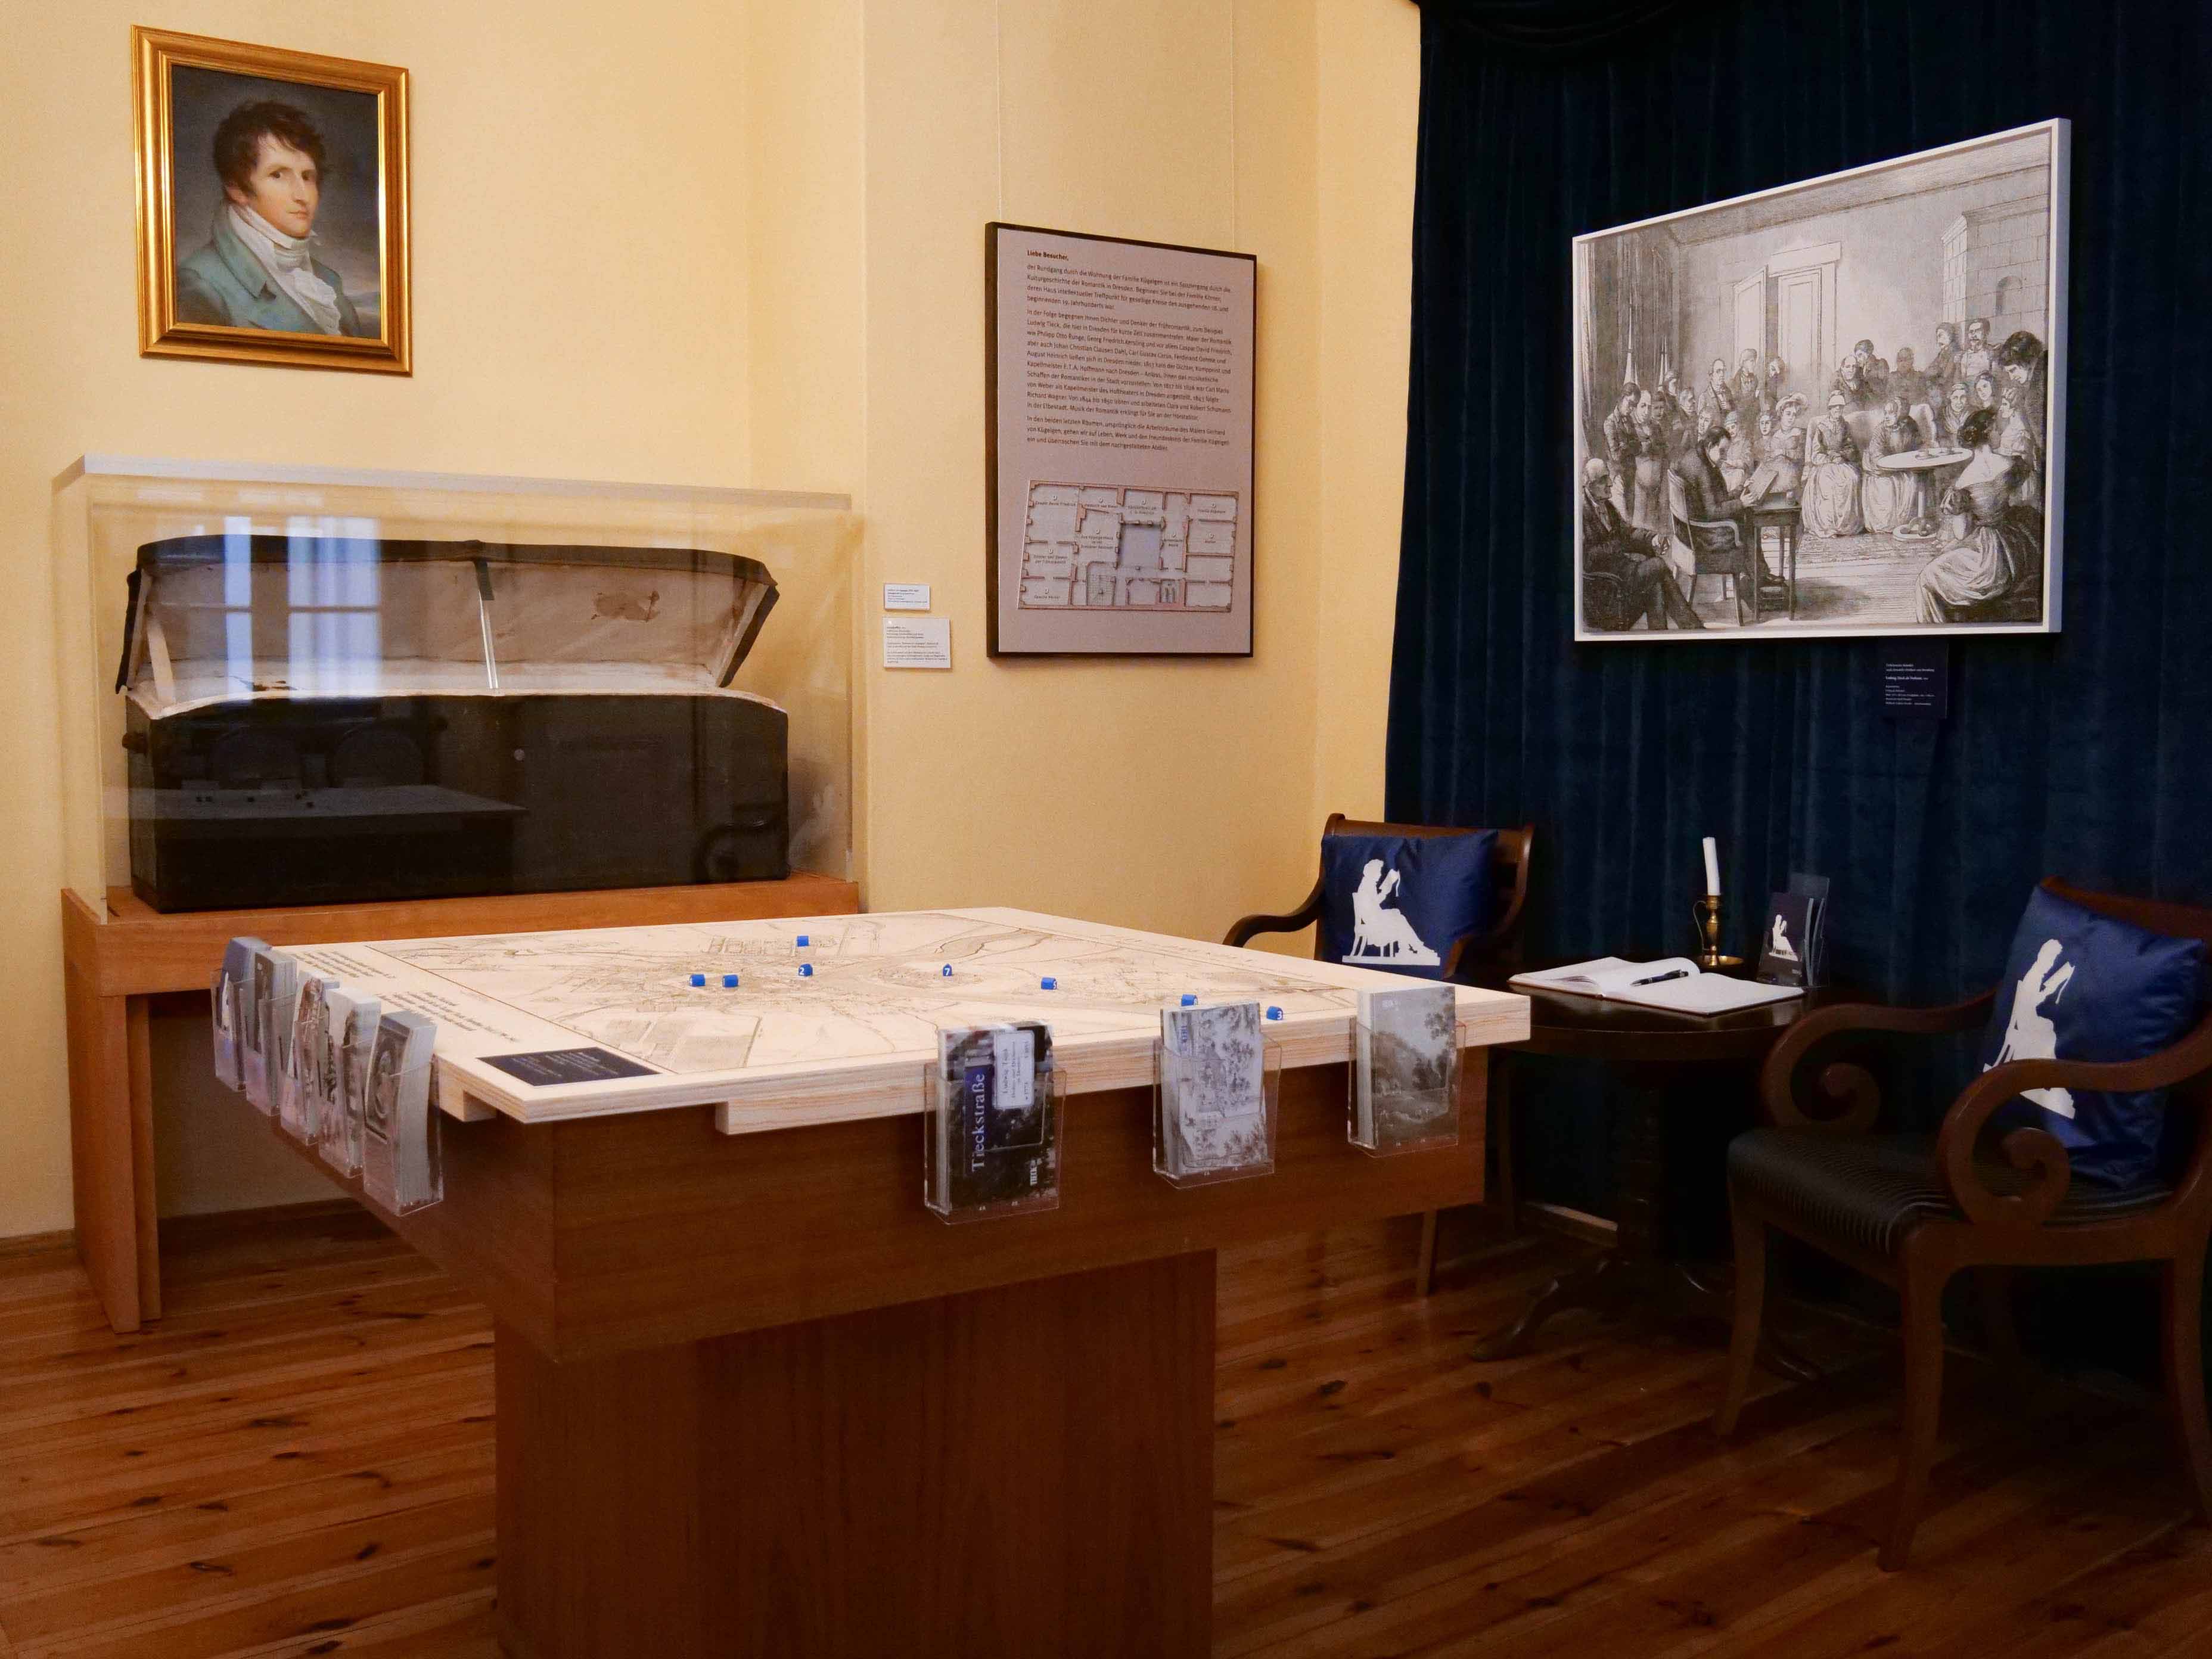 Foto eines Ausstellungsbereiches mit einem quadratischen Tisch in der Mitte, auf dem ein Stadtplan aufgebracht ist, an den Seiten sind Postkartenhalter. Im Hintergrund befindet sich eine Vitrine mit einer aufgeklappten historischen Truhe.